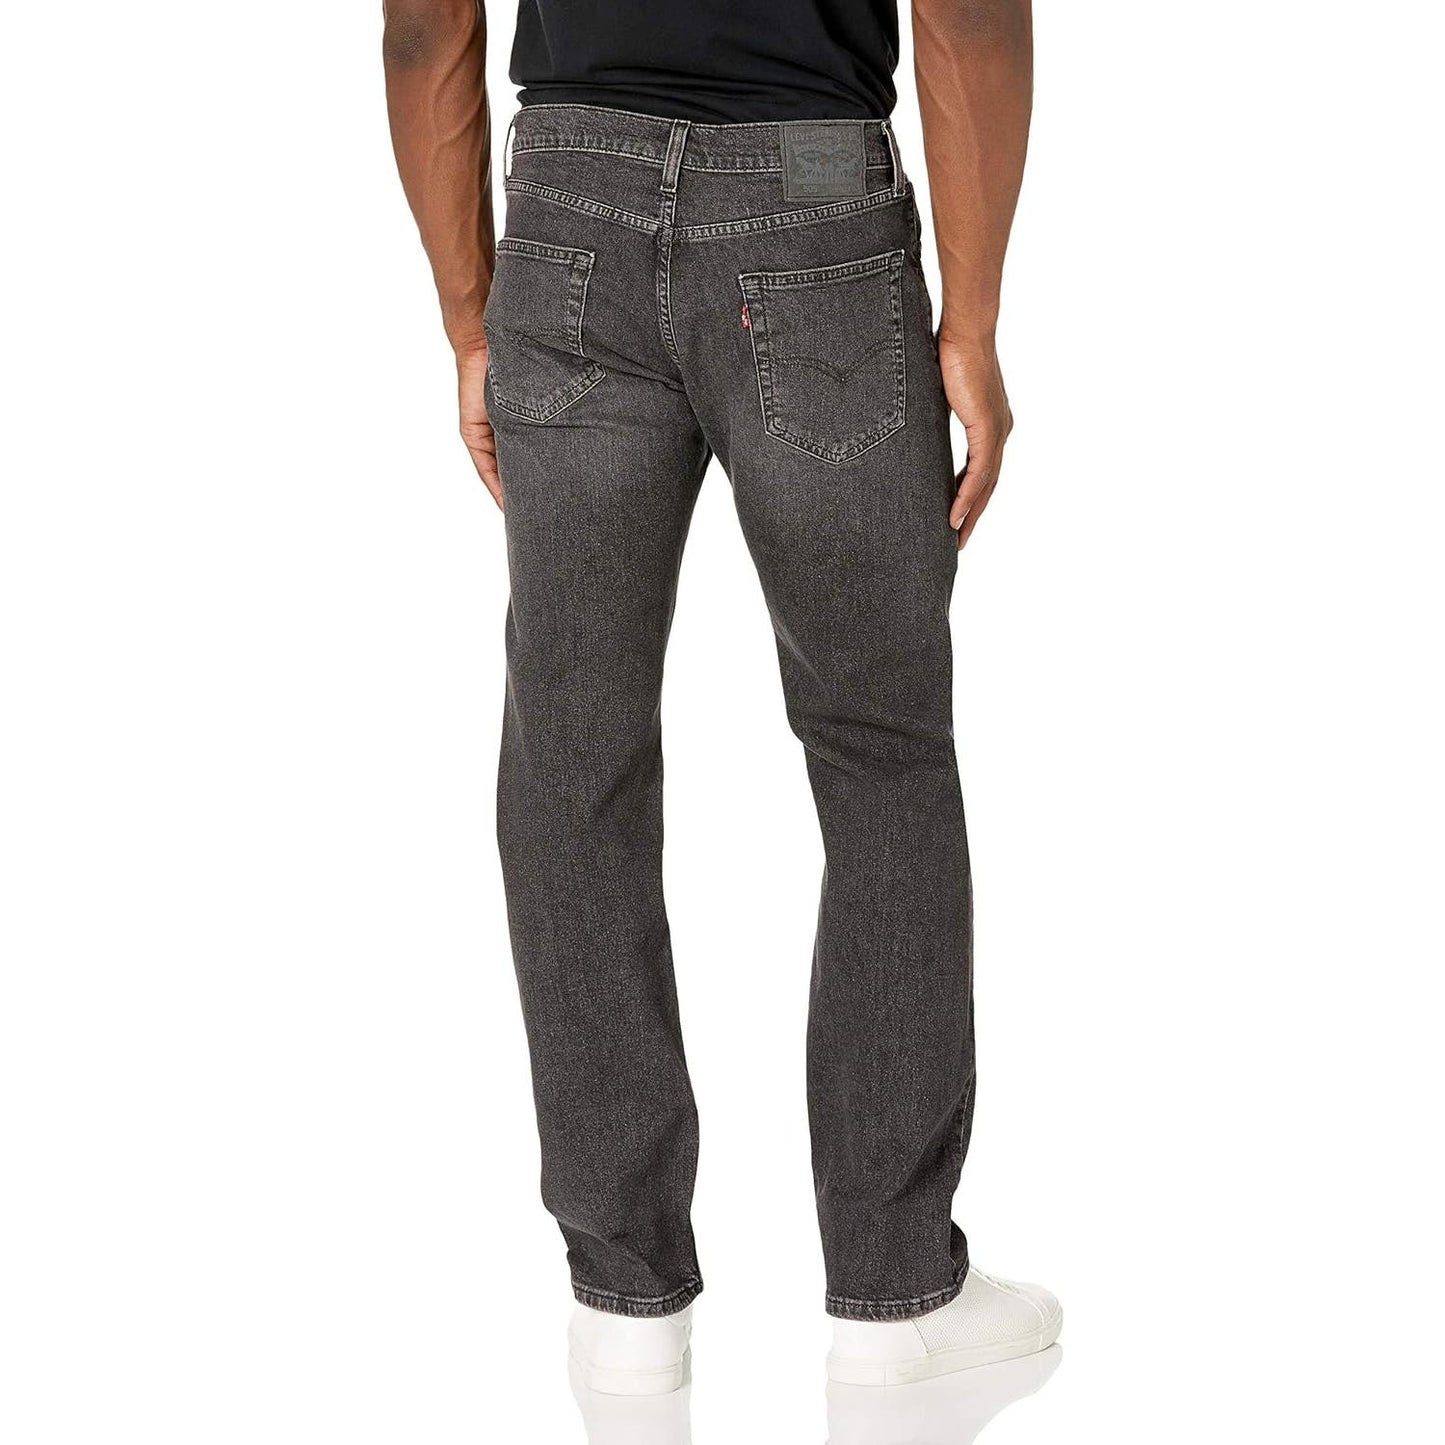 Levi's Men's 505 Regular Fit Jeans, "Kansas" Charcoal Wash, Size 30x32